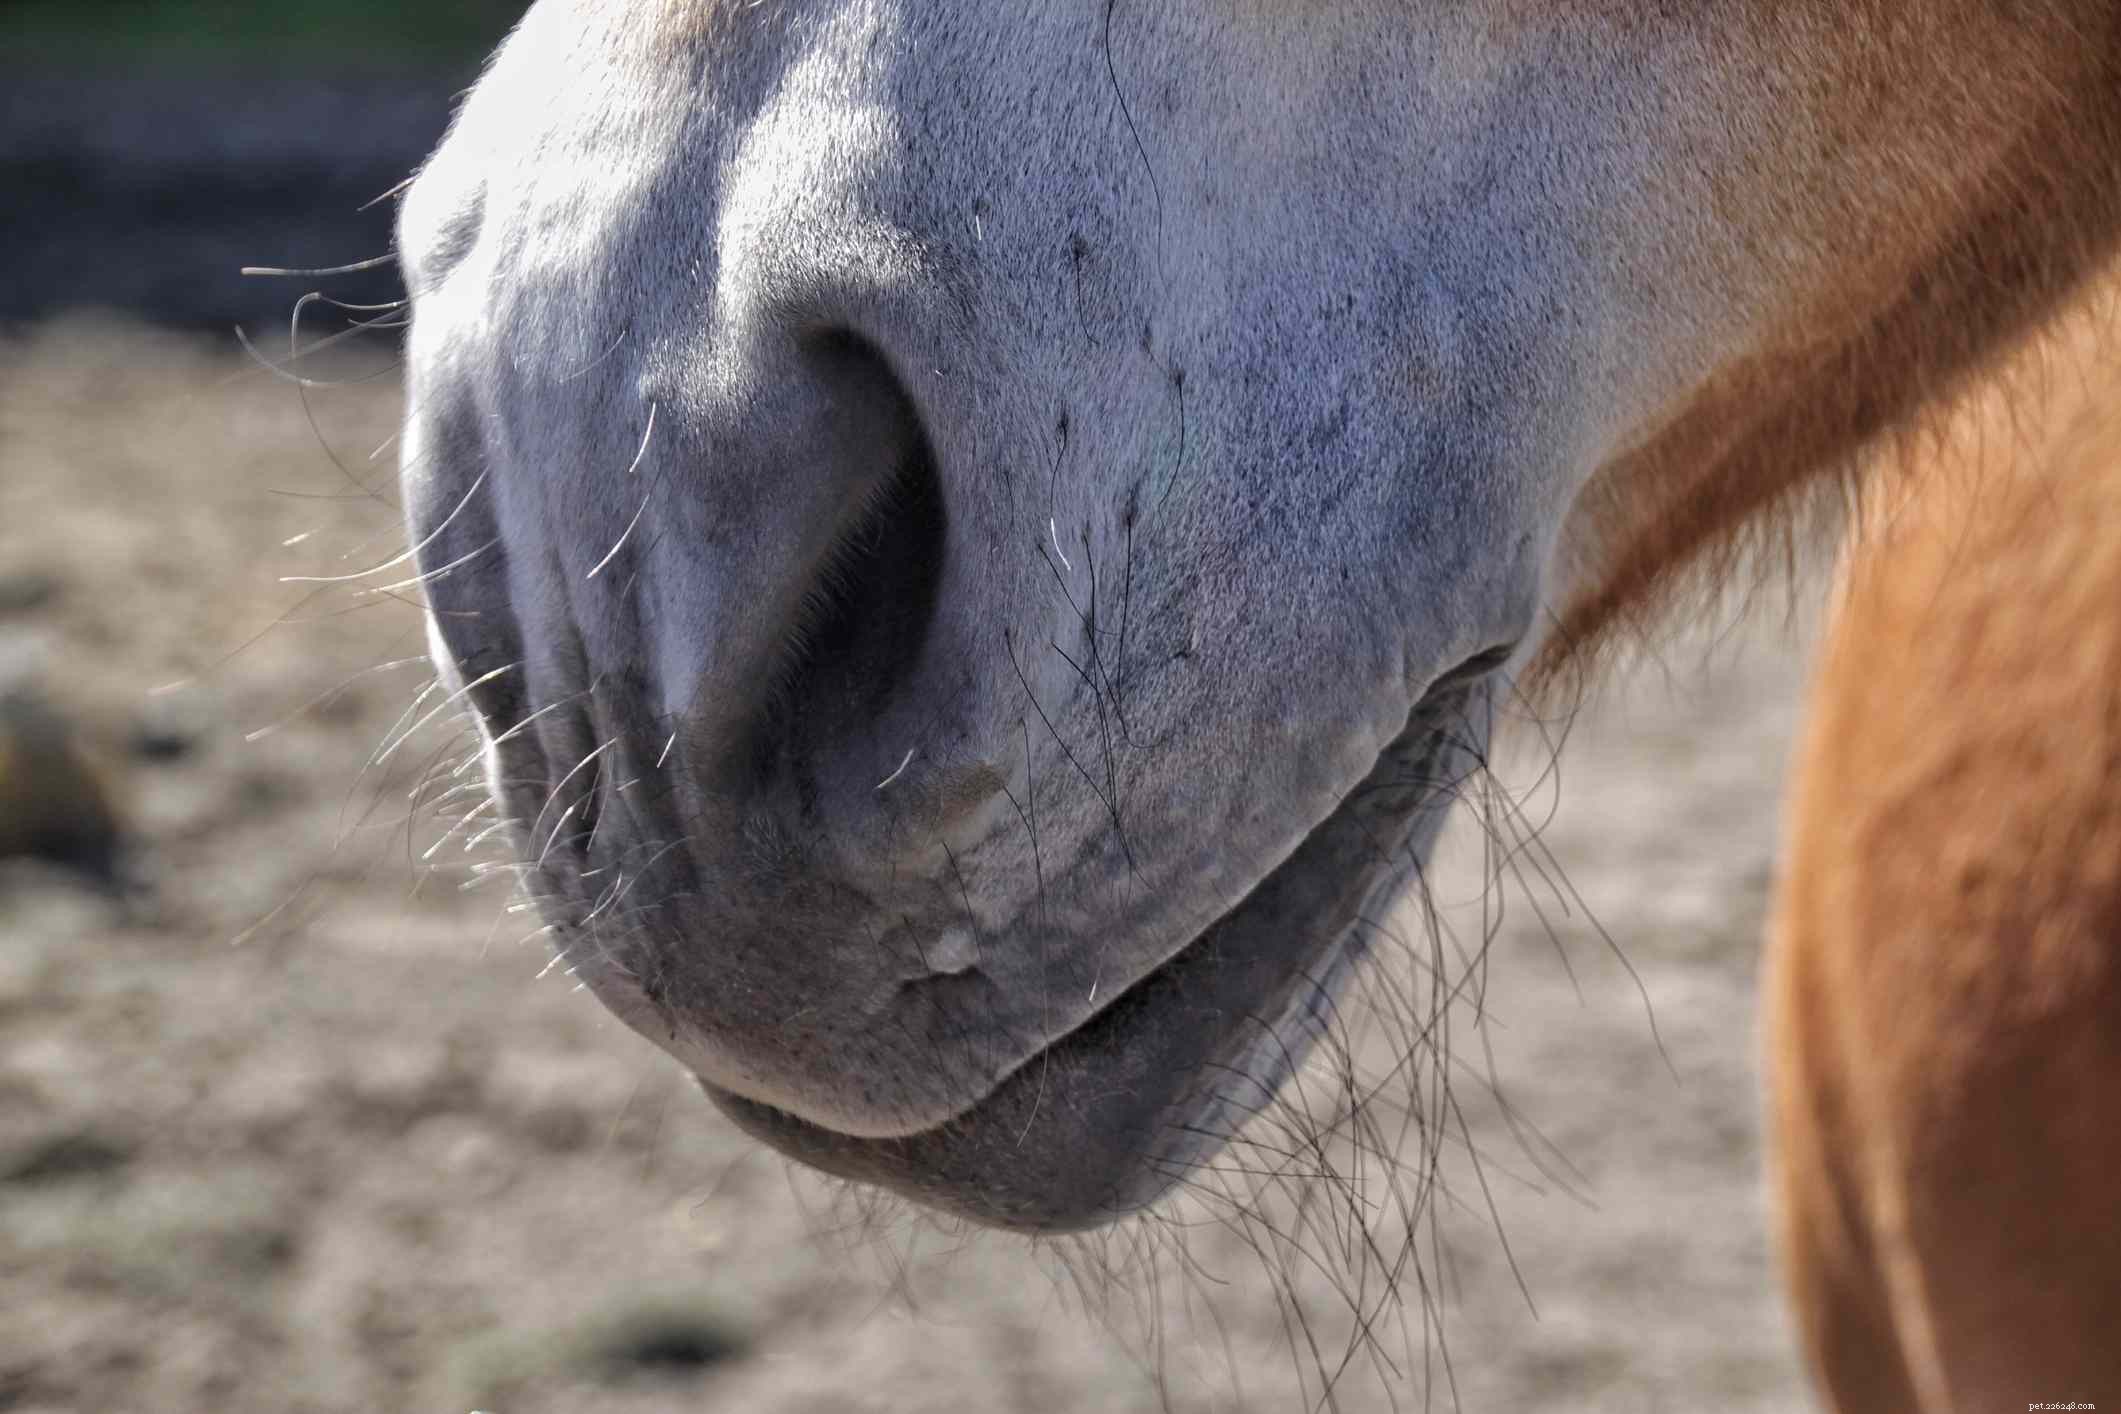 En bildguide till de olika delarna av en häst